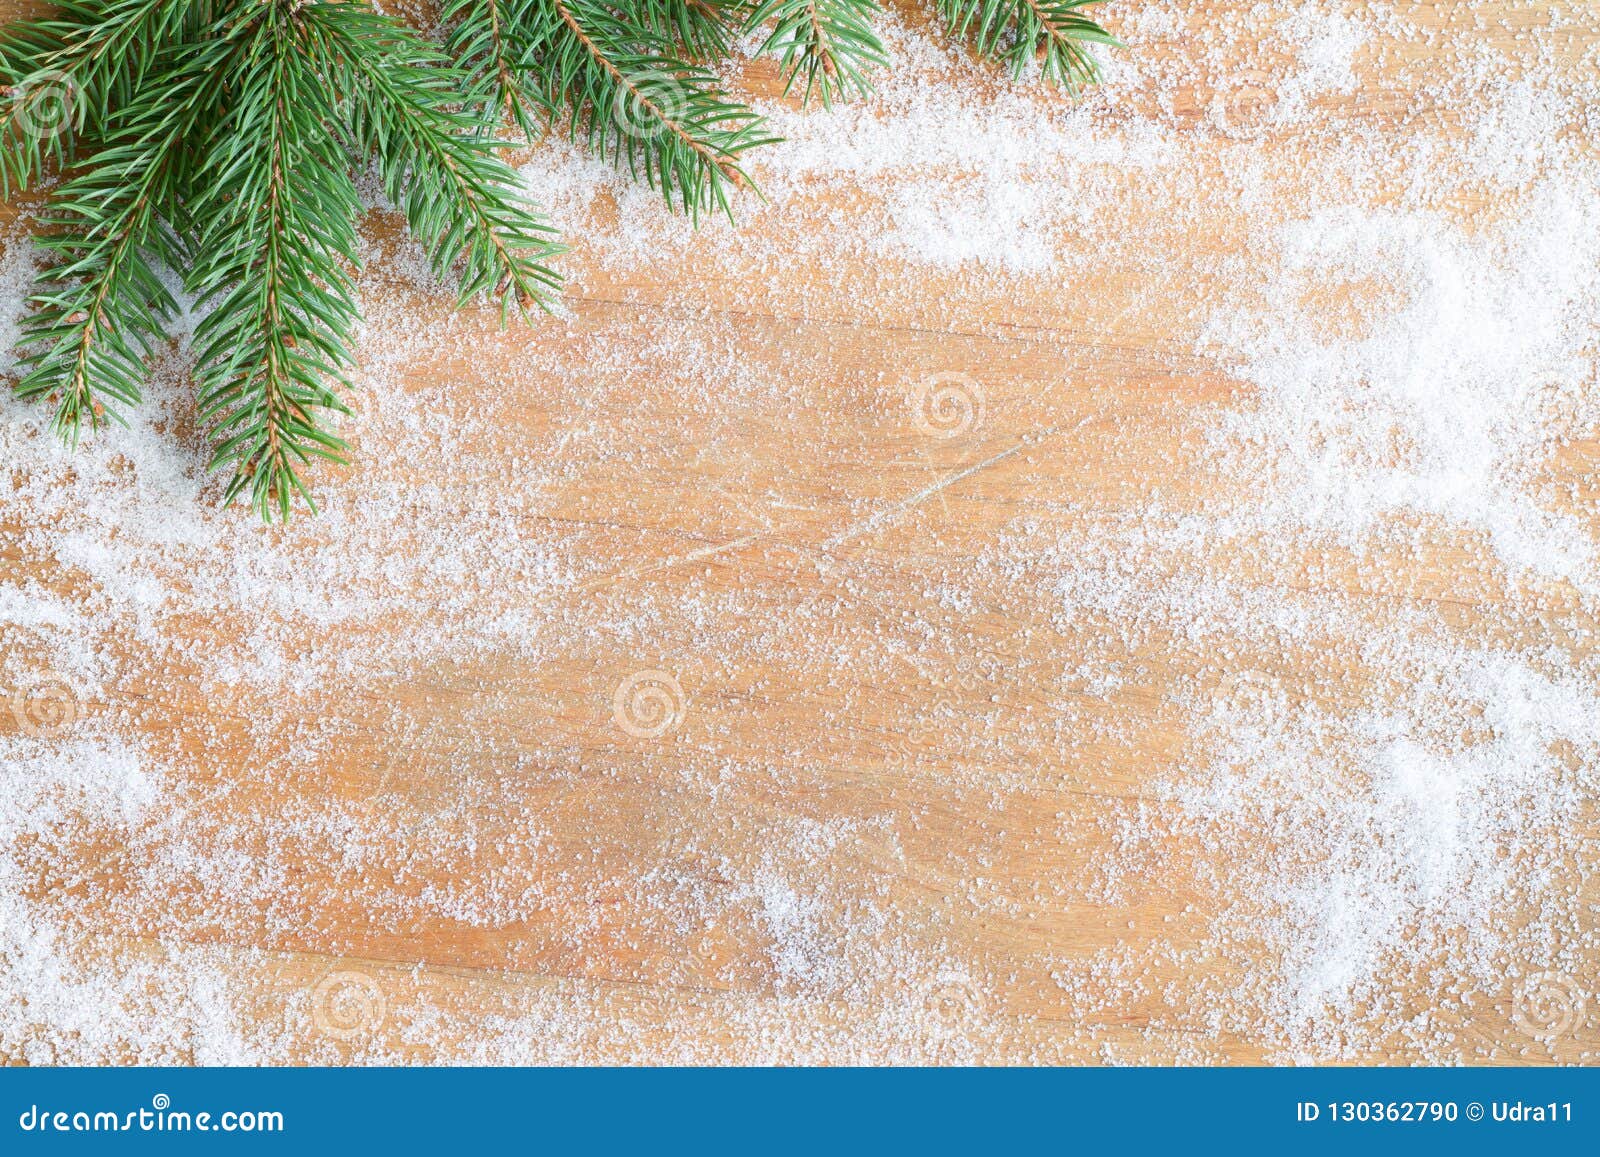 Christmas Baking Background Stock Image - Image of candy, frame: 103132707